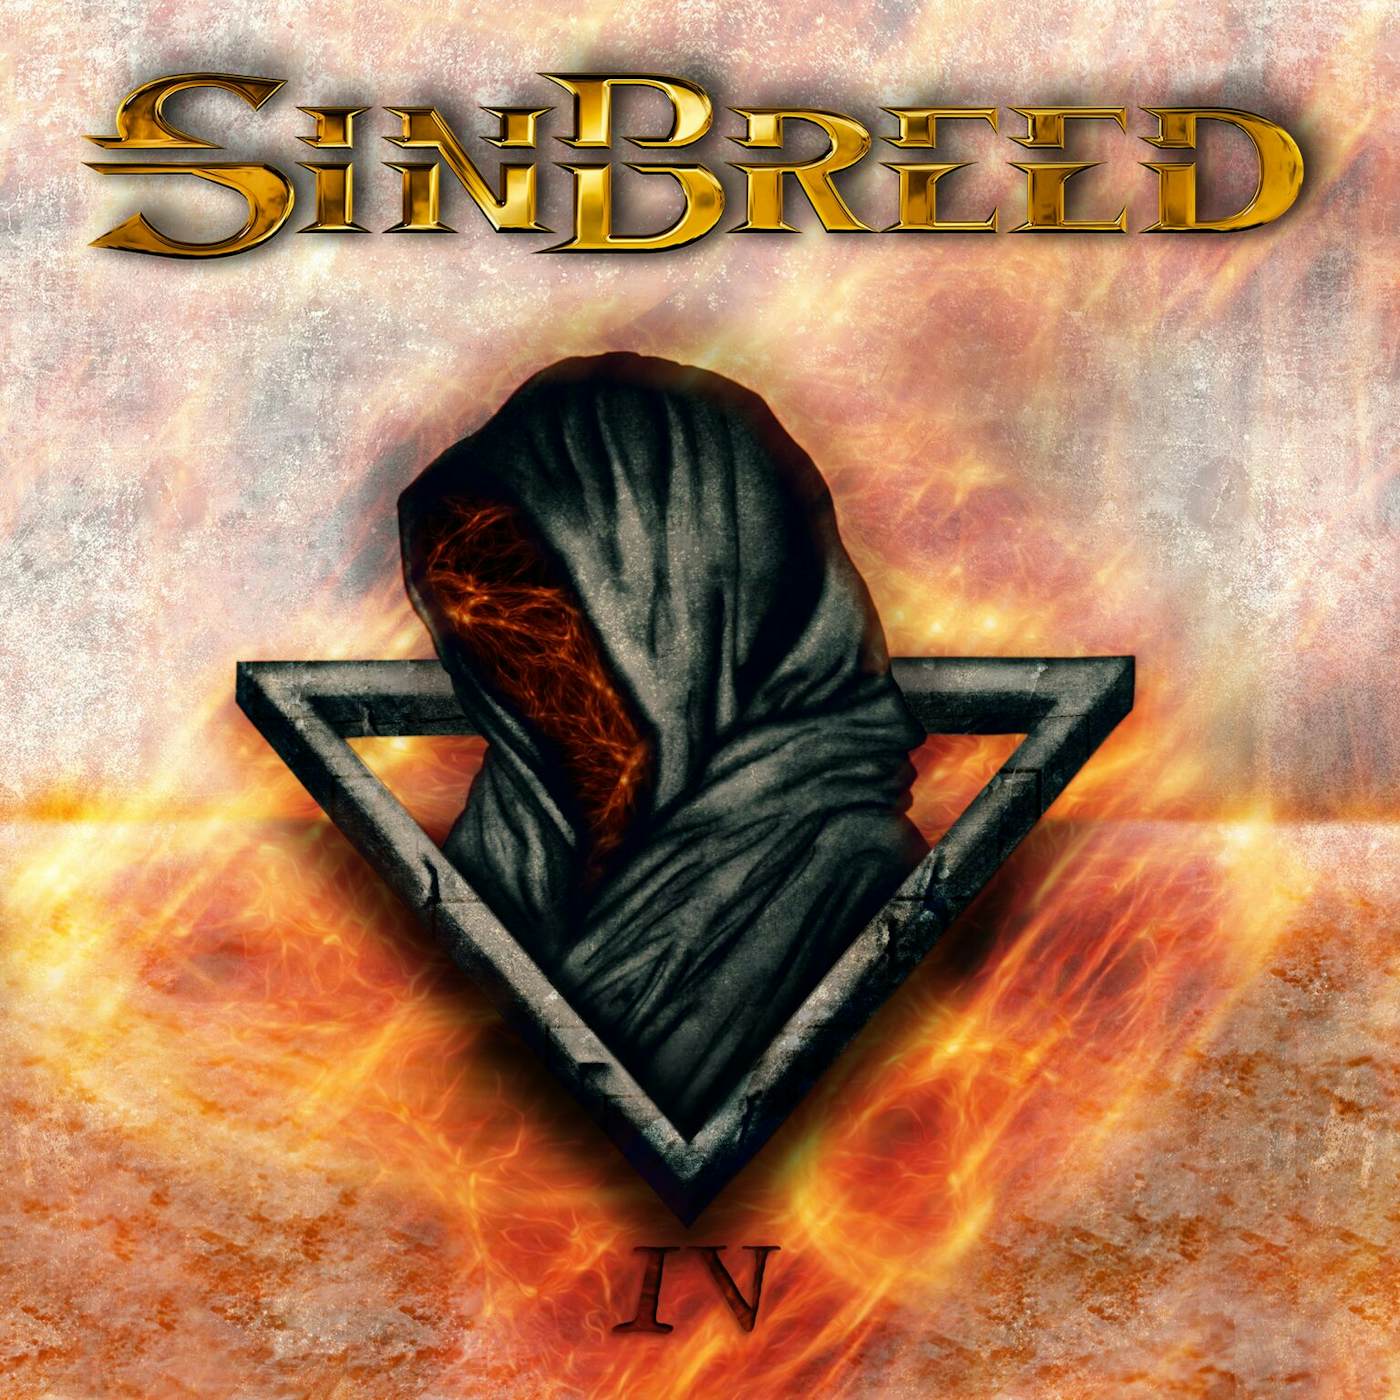 Sinbreed IV Vinyl Record